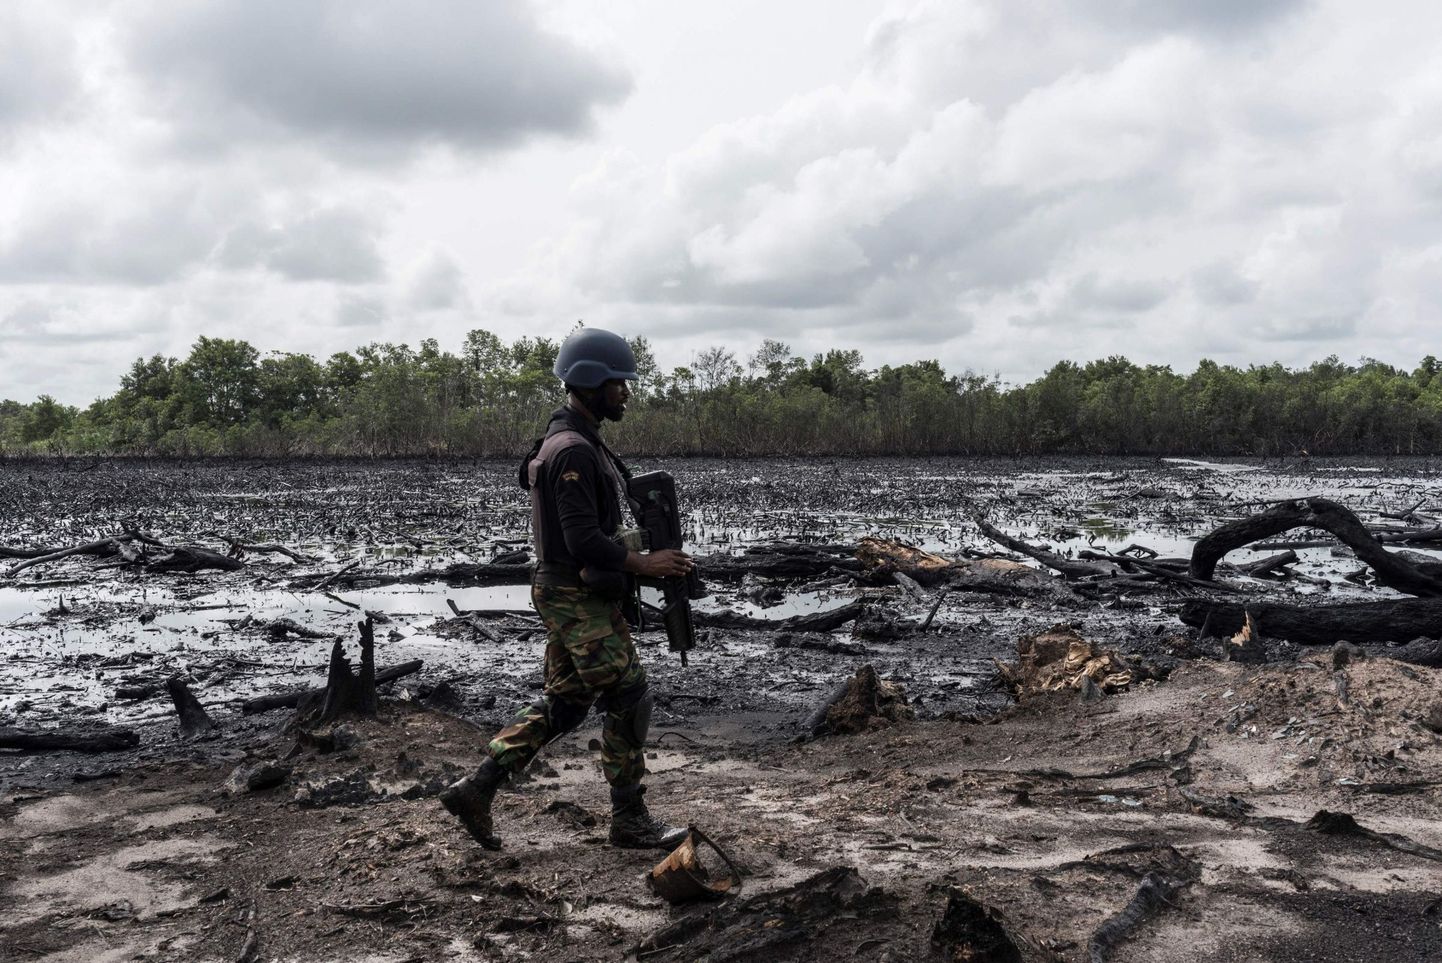 Nigeeria politsei hinnangul olid pantvangivõtjateks
naftarikkas Delta piirkonnas alatasa nafta- ja gaasitorudele rünnakuid korraldavad sissivõitlejad.